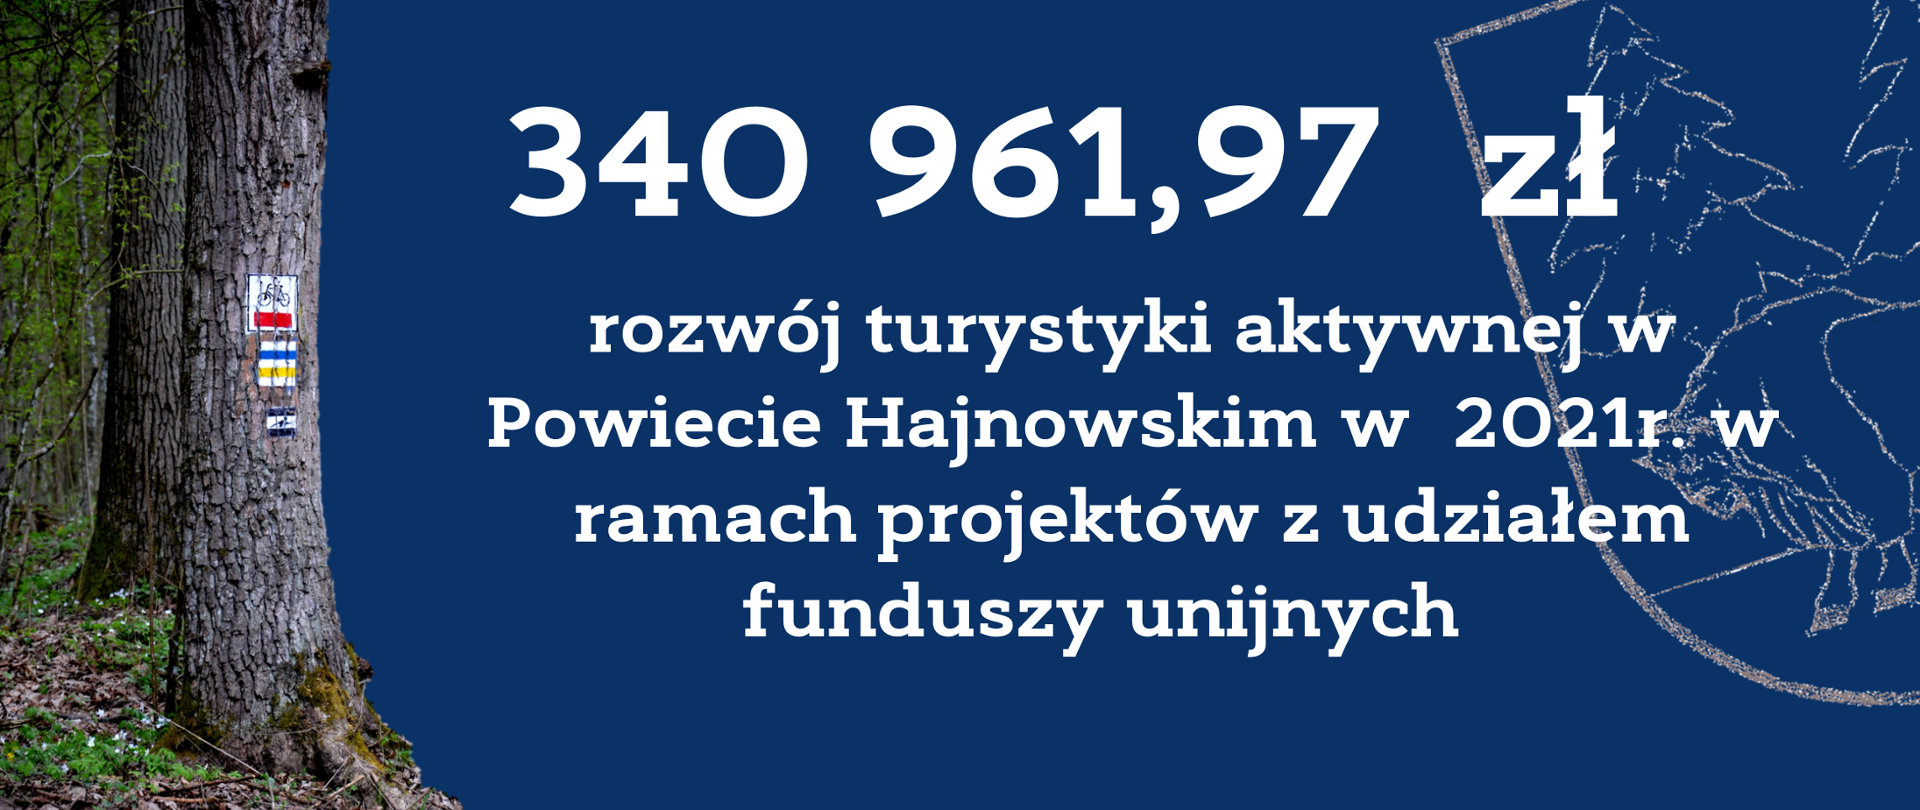 340 961, 97 zł na rozwój turystyki aktywnej w Powiecie Hajnowskim w 2021 r. w ramach projektów z udziałem funduszy unijnych